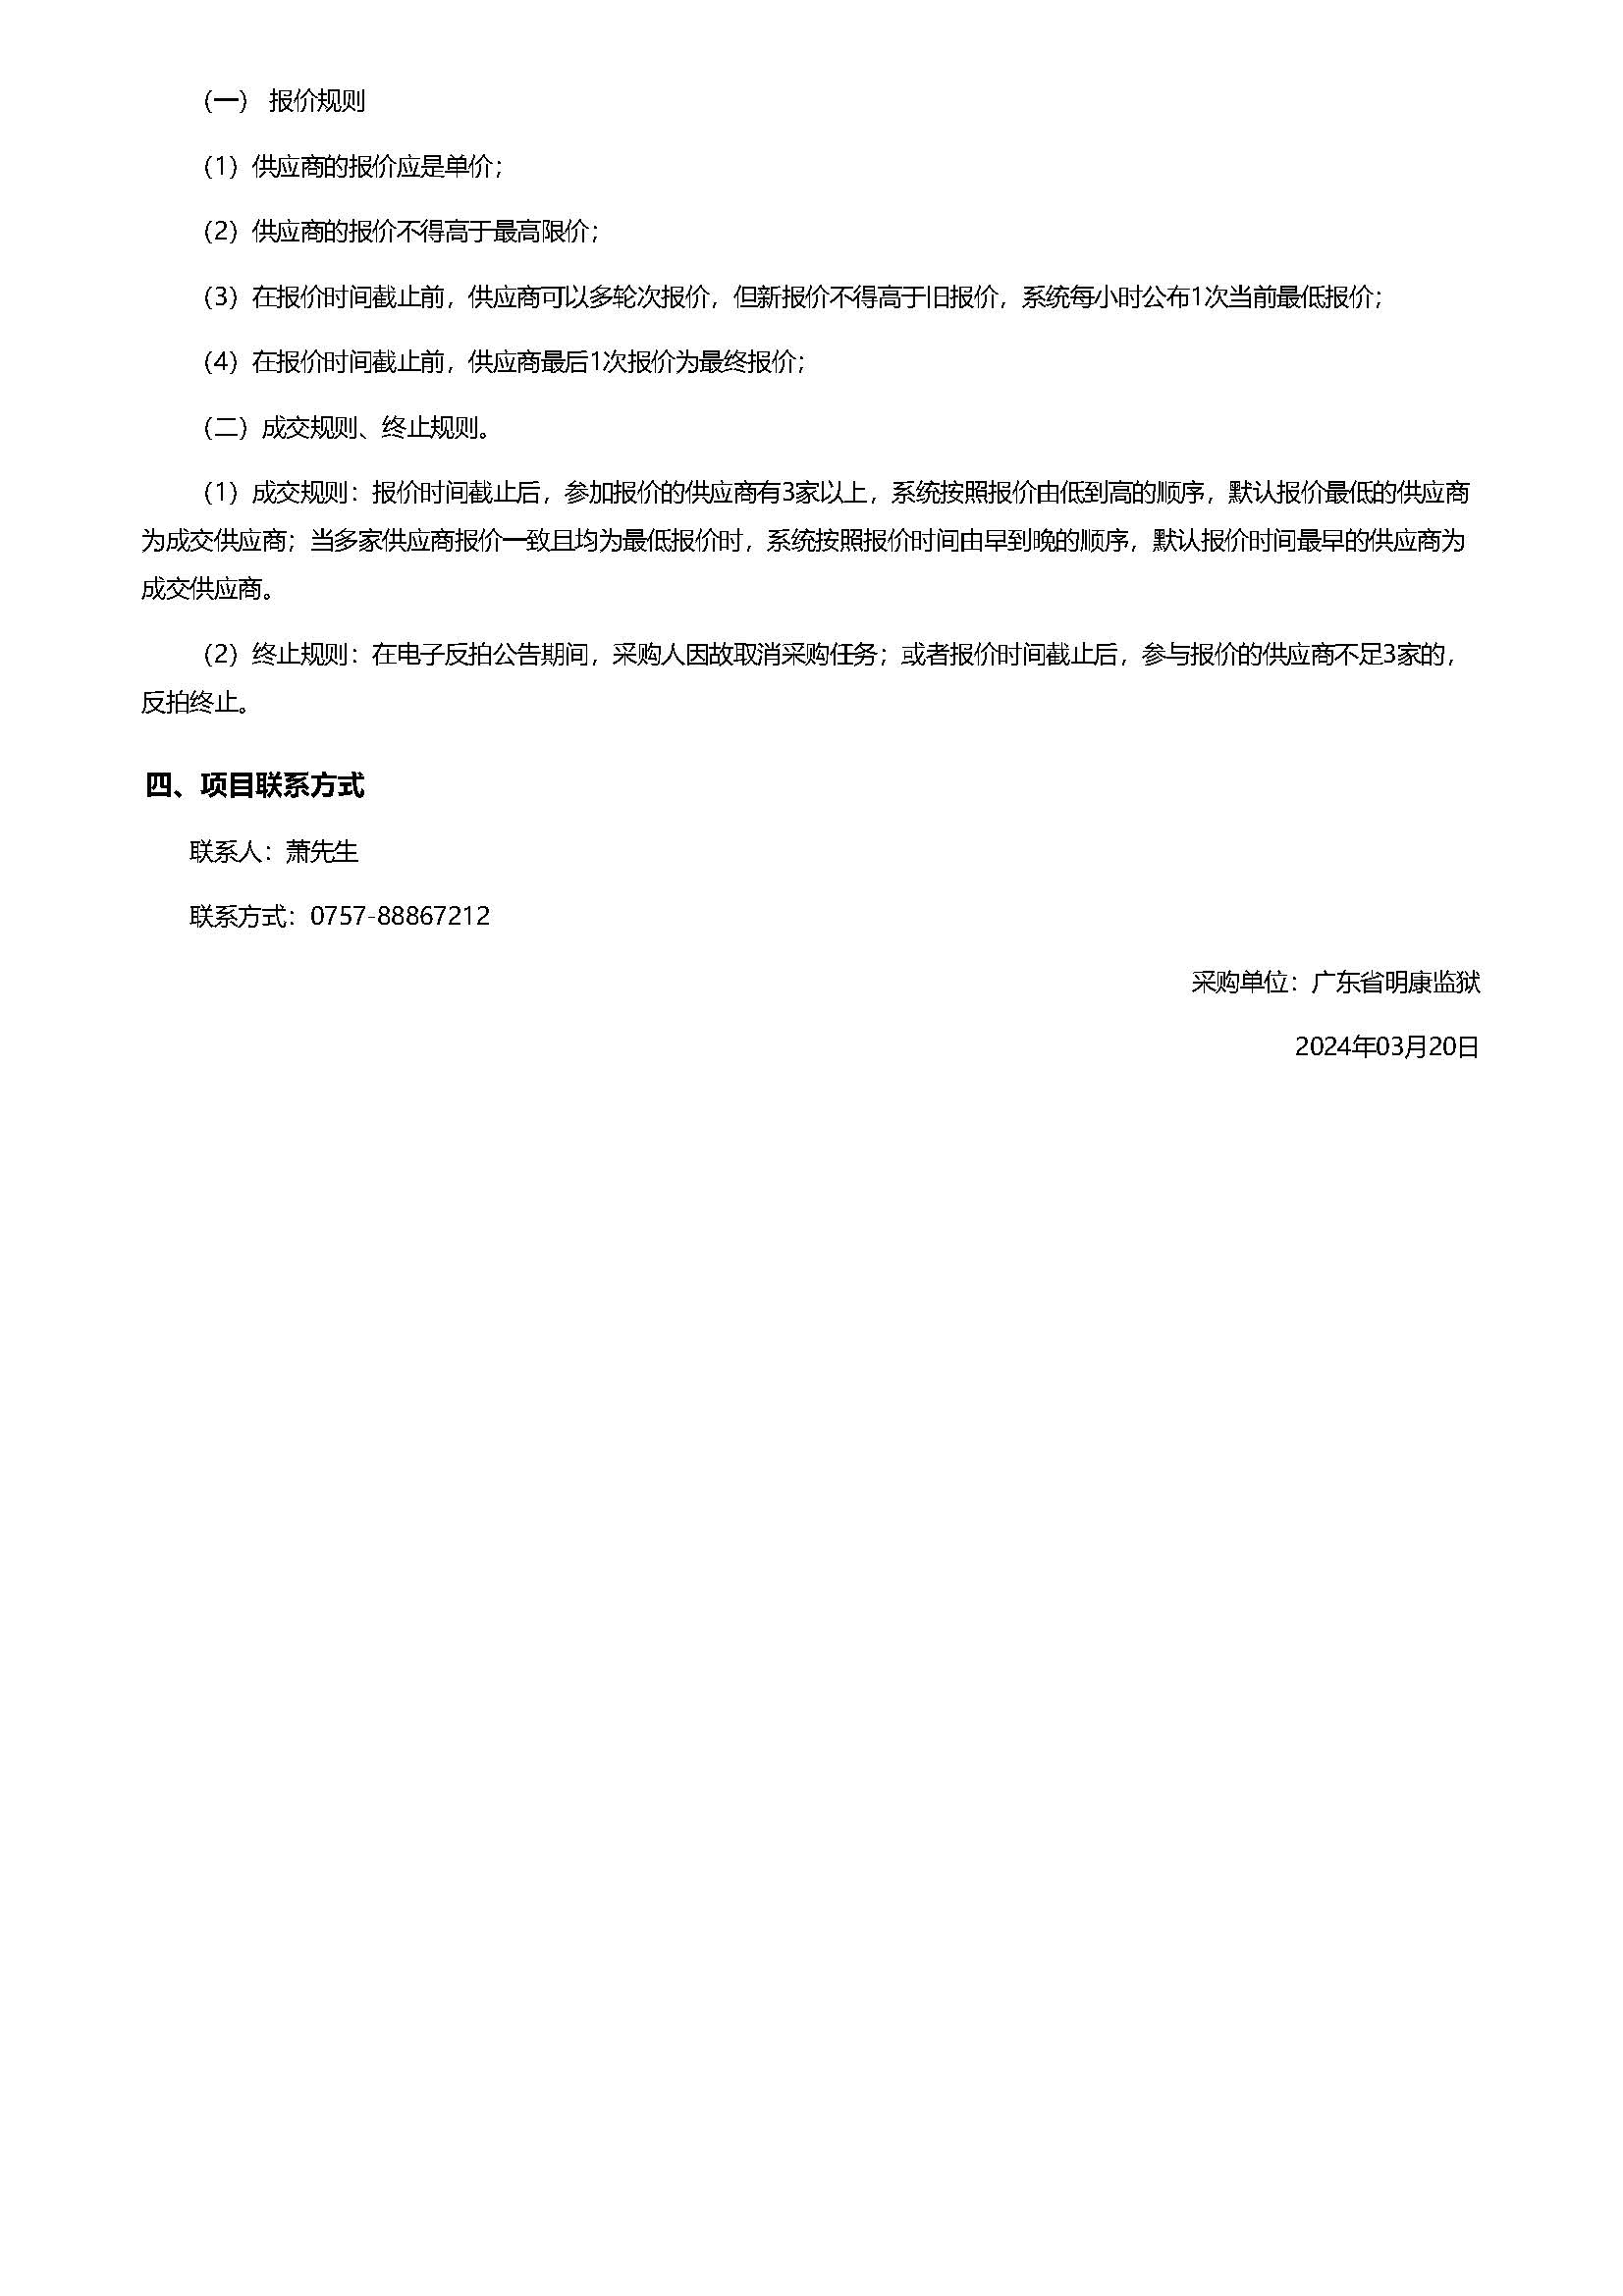 28.47广东省明康监狱复印纸电子反拍项目采购公告（A3）_页面_2.jpg